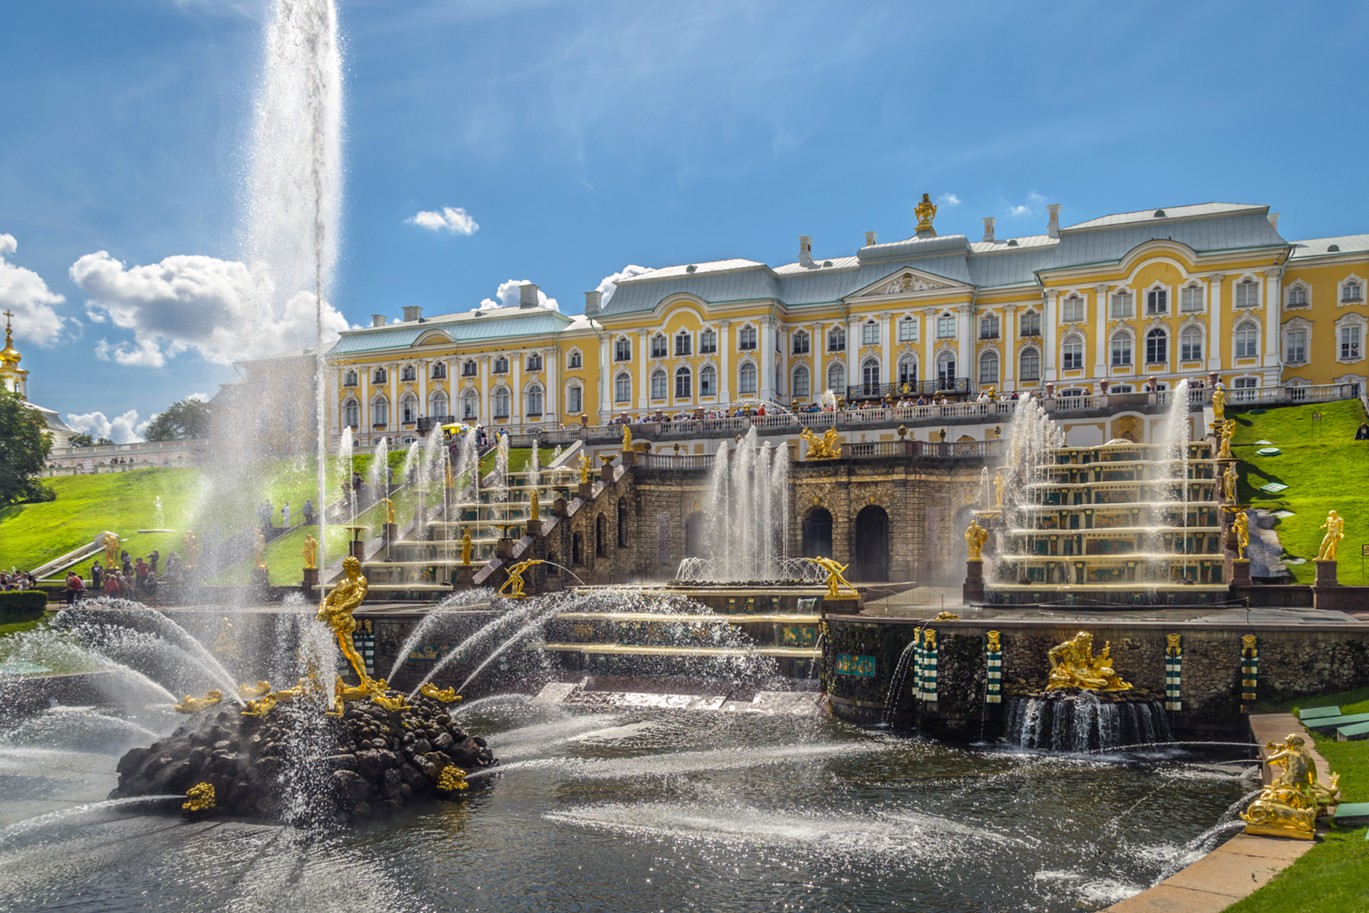 Гулять по парку в Петергофе можно весь день, любуясь его фонтанами и величественными сооружениями